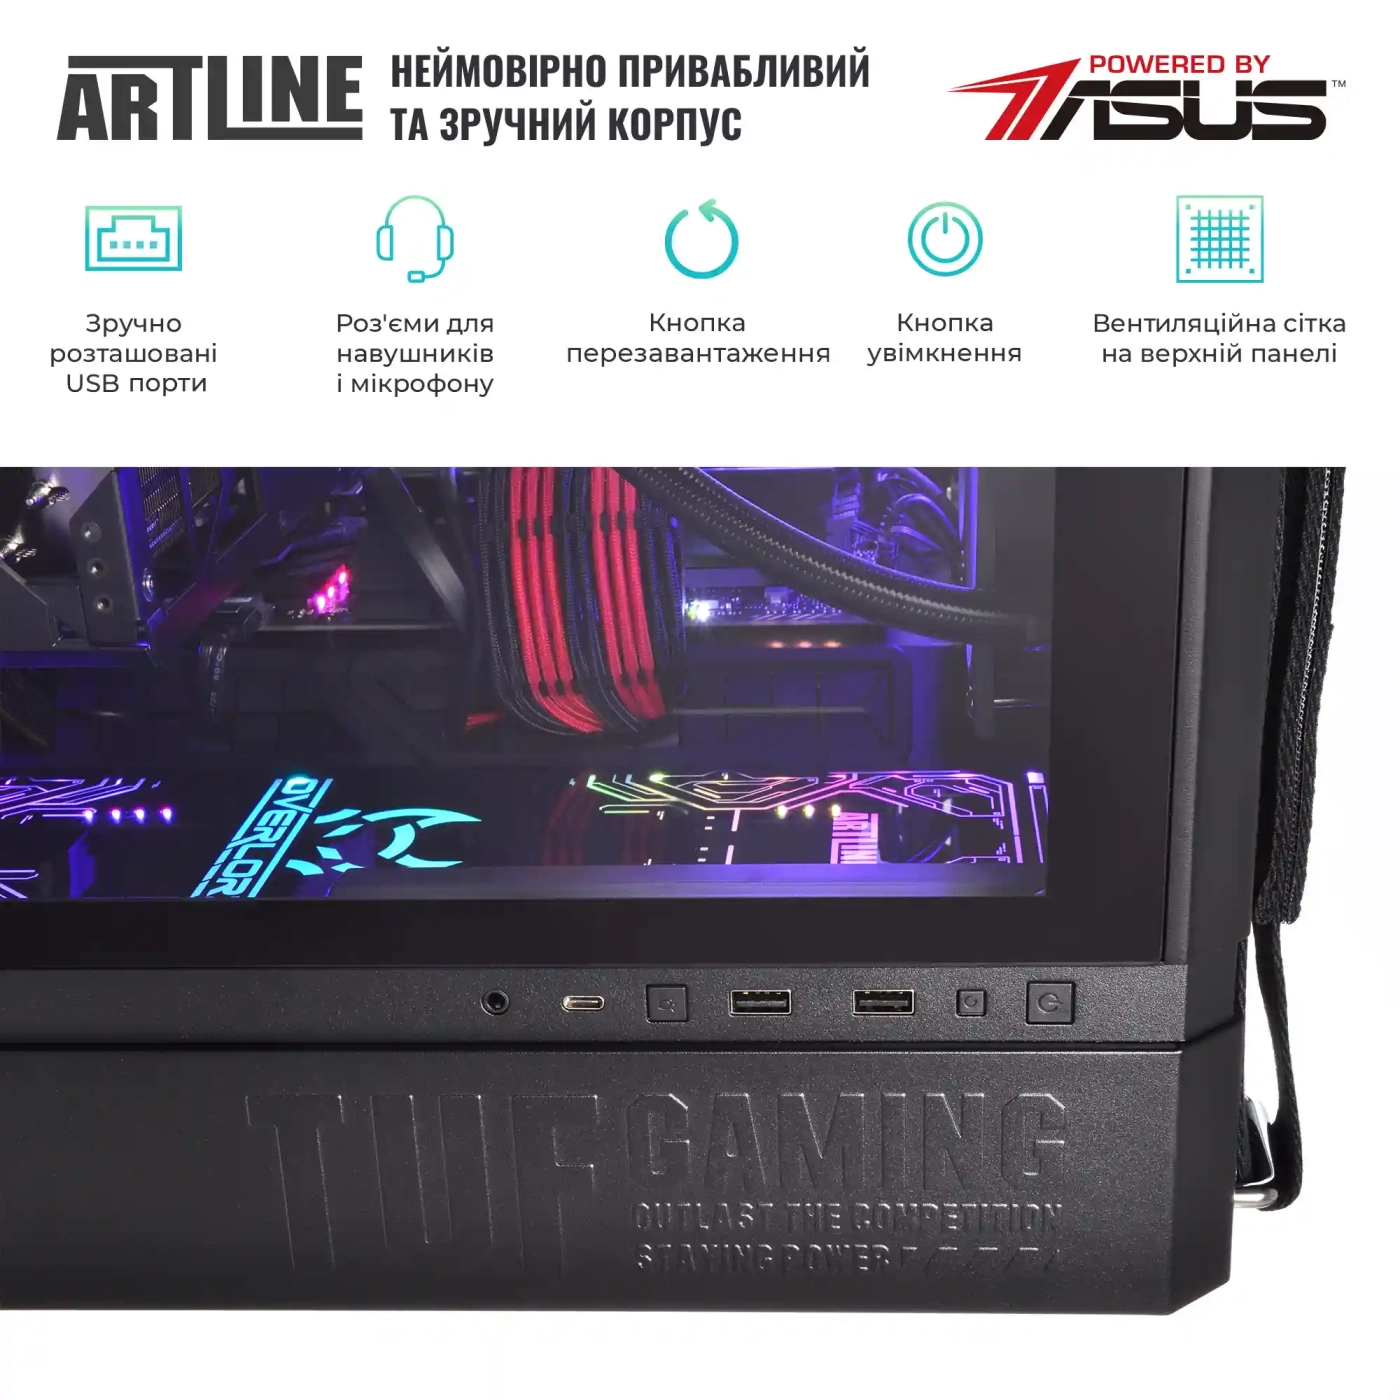 Купить Компьютер ARTLINE Gaming GT502v30 - фото 7